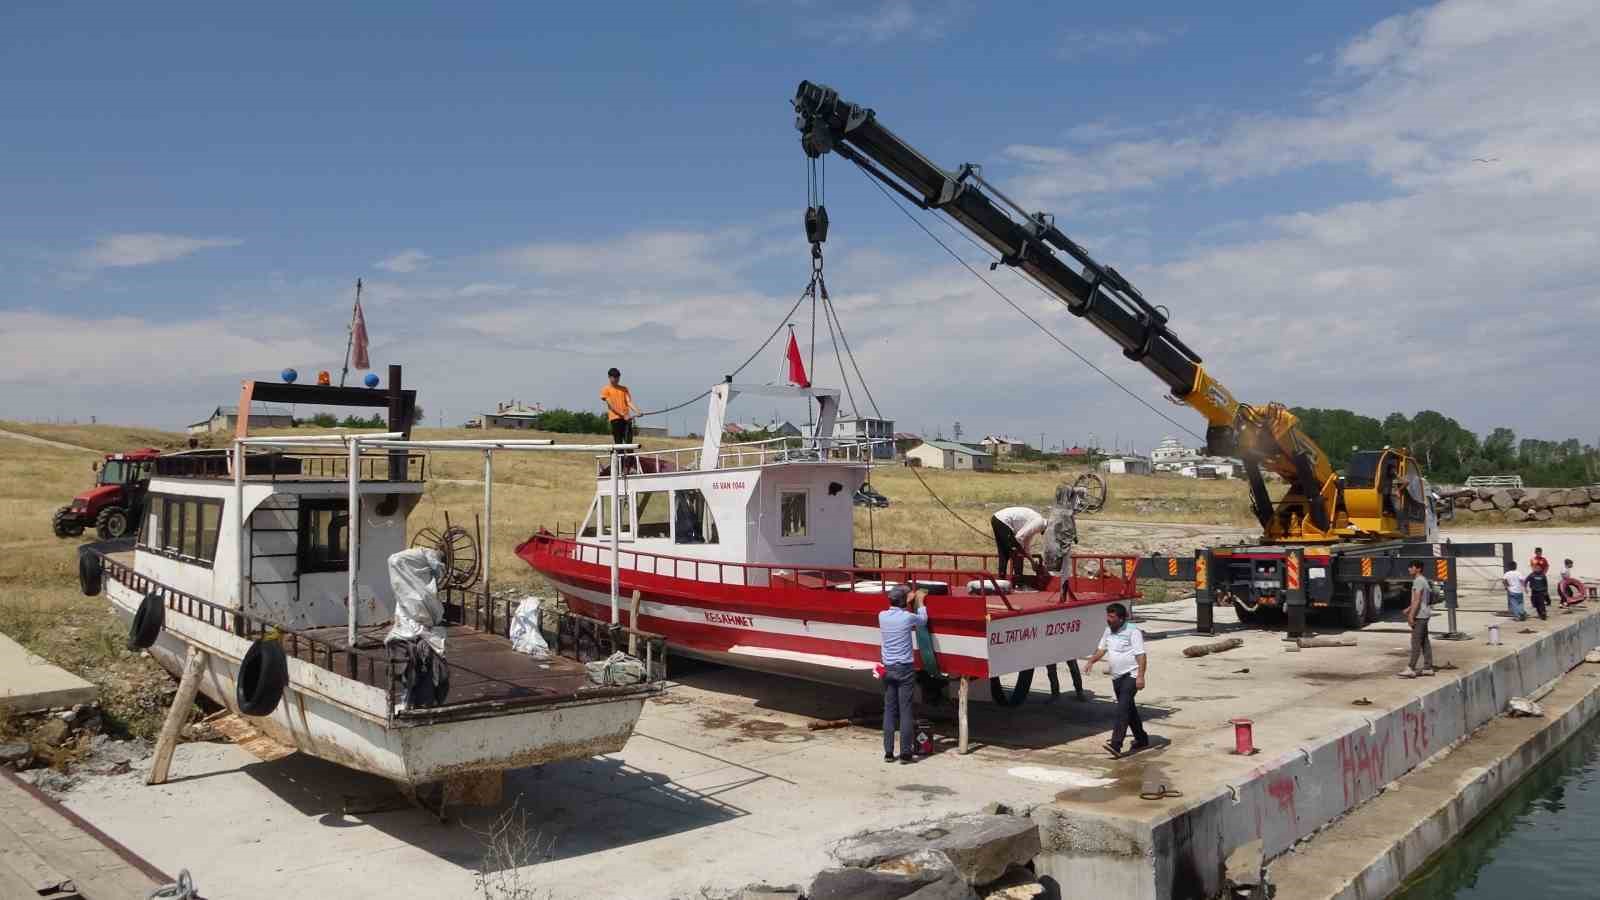 Av sezonu için bakımları yapılan tekneler Van Gölü’ne indirildi